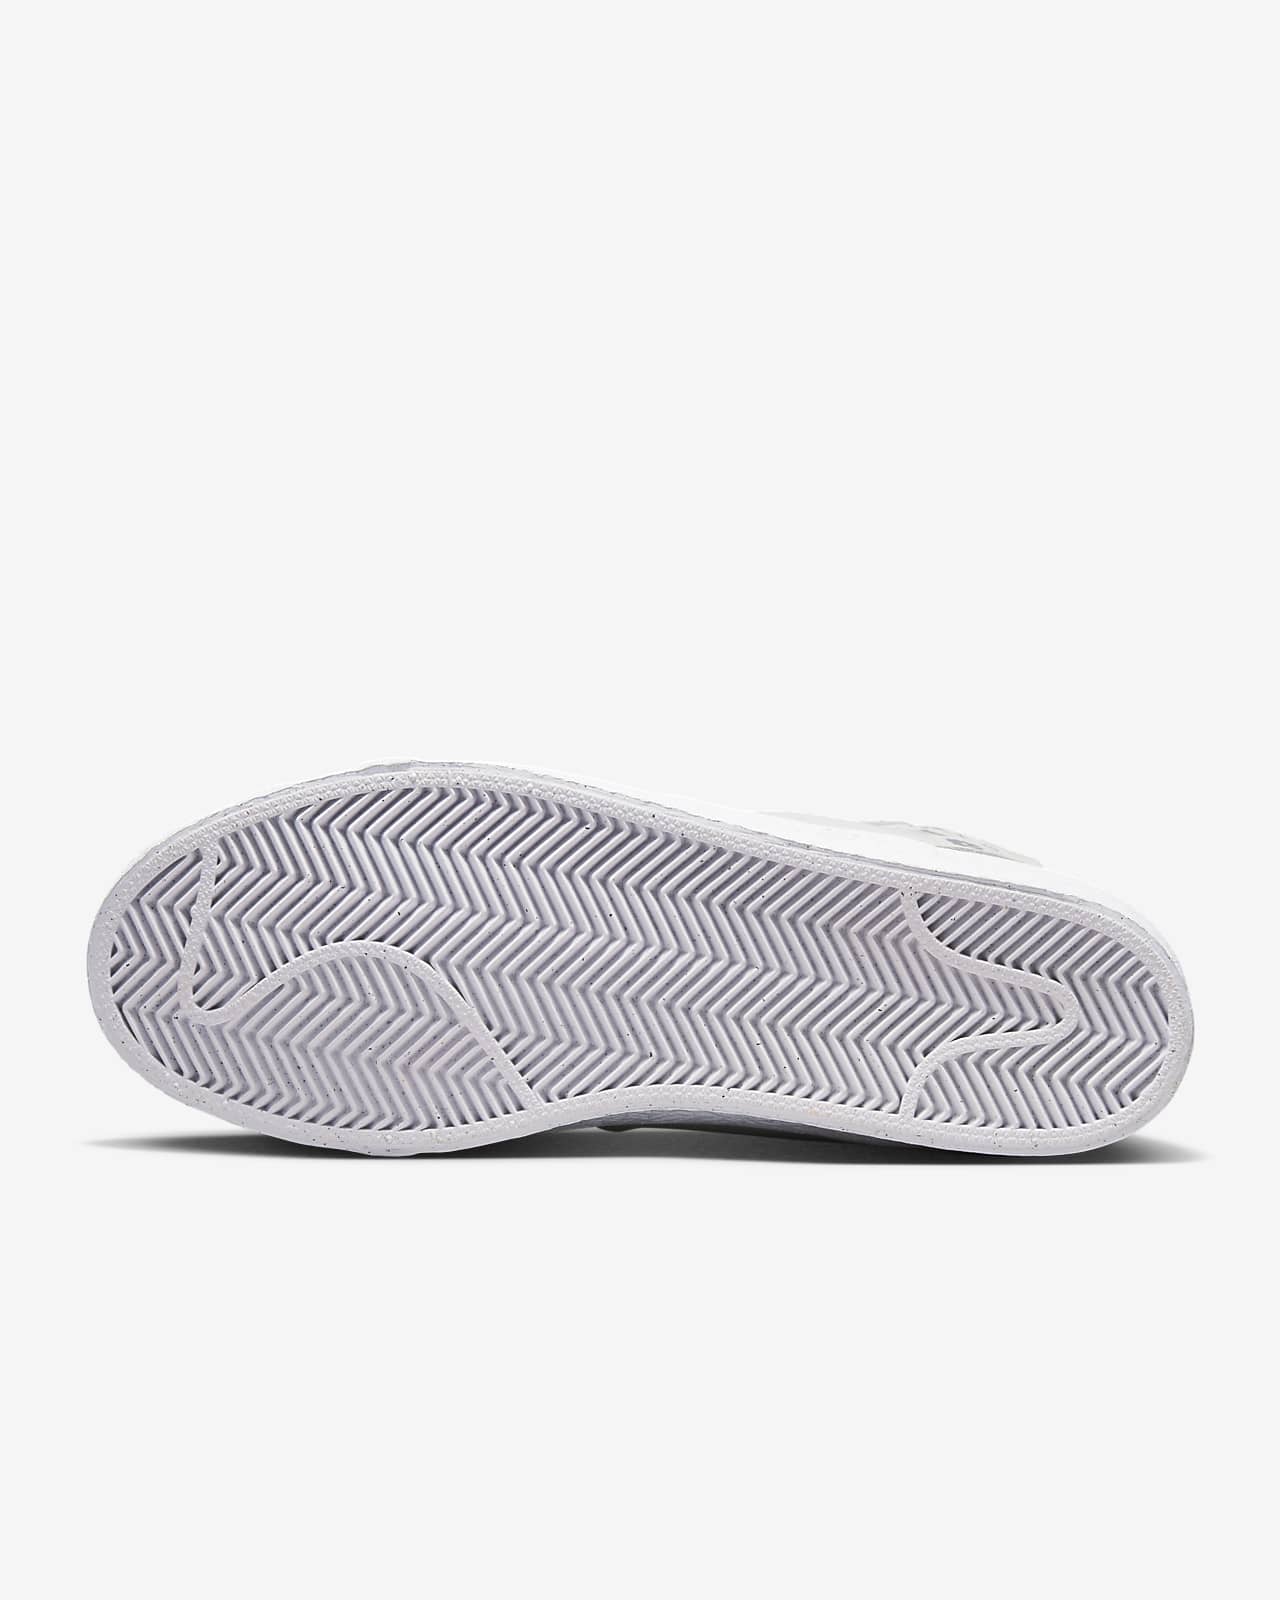 intersección Unir escapar Nike SB Zoom Blazer Mid Premium Zapatillas de skateboard. Nike ES